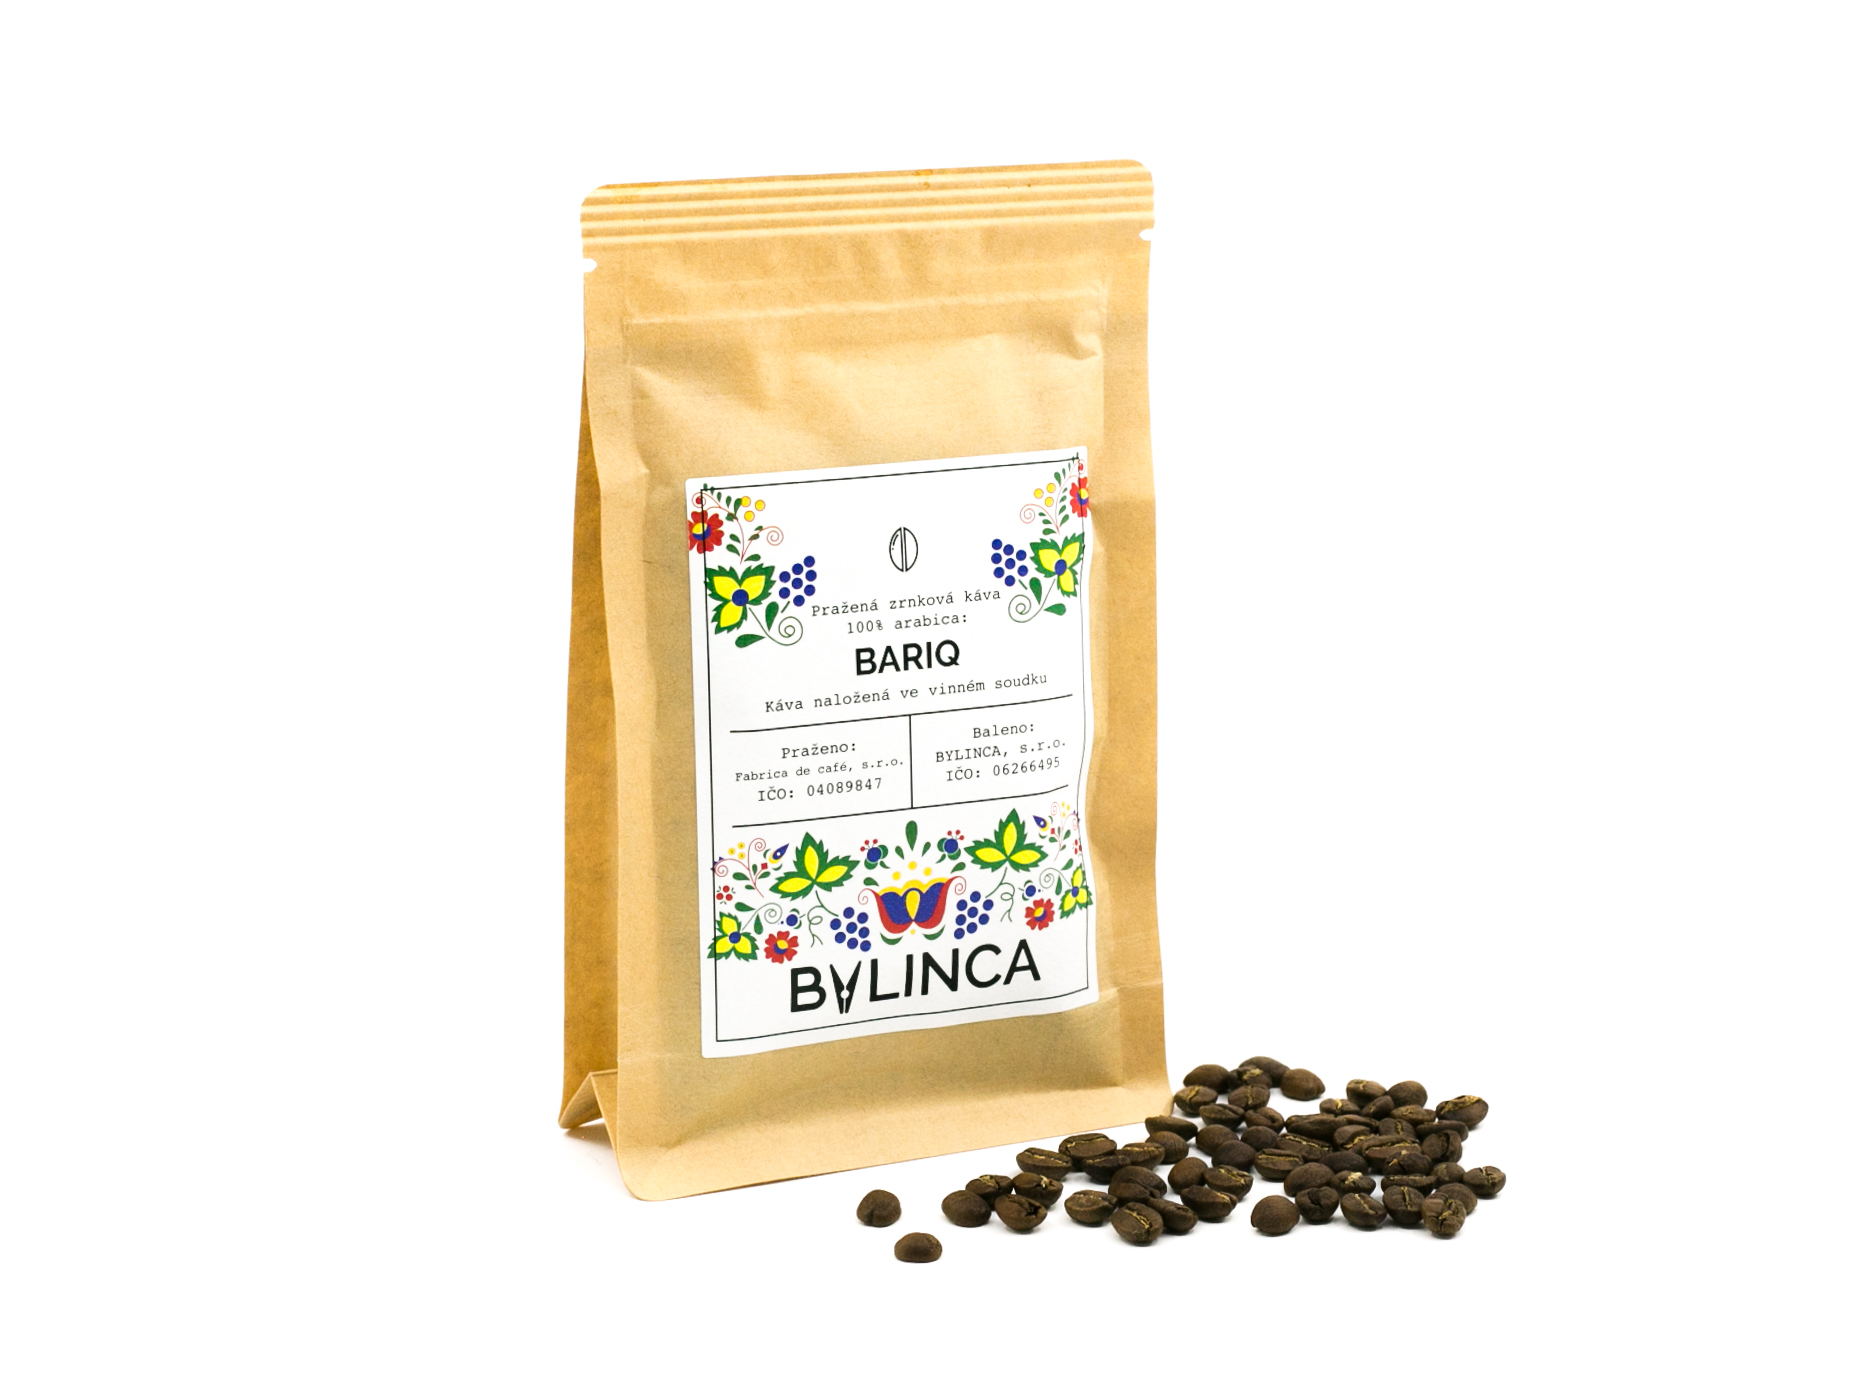 Zrnková káva: Bariq 100g, 250g, 500g, 1000g 1 ks: 500g